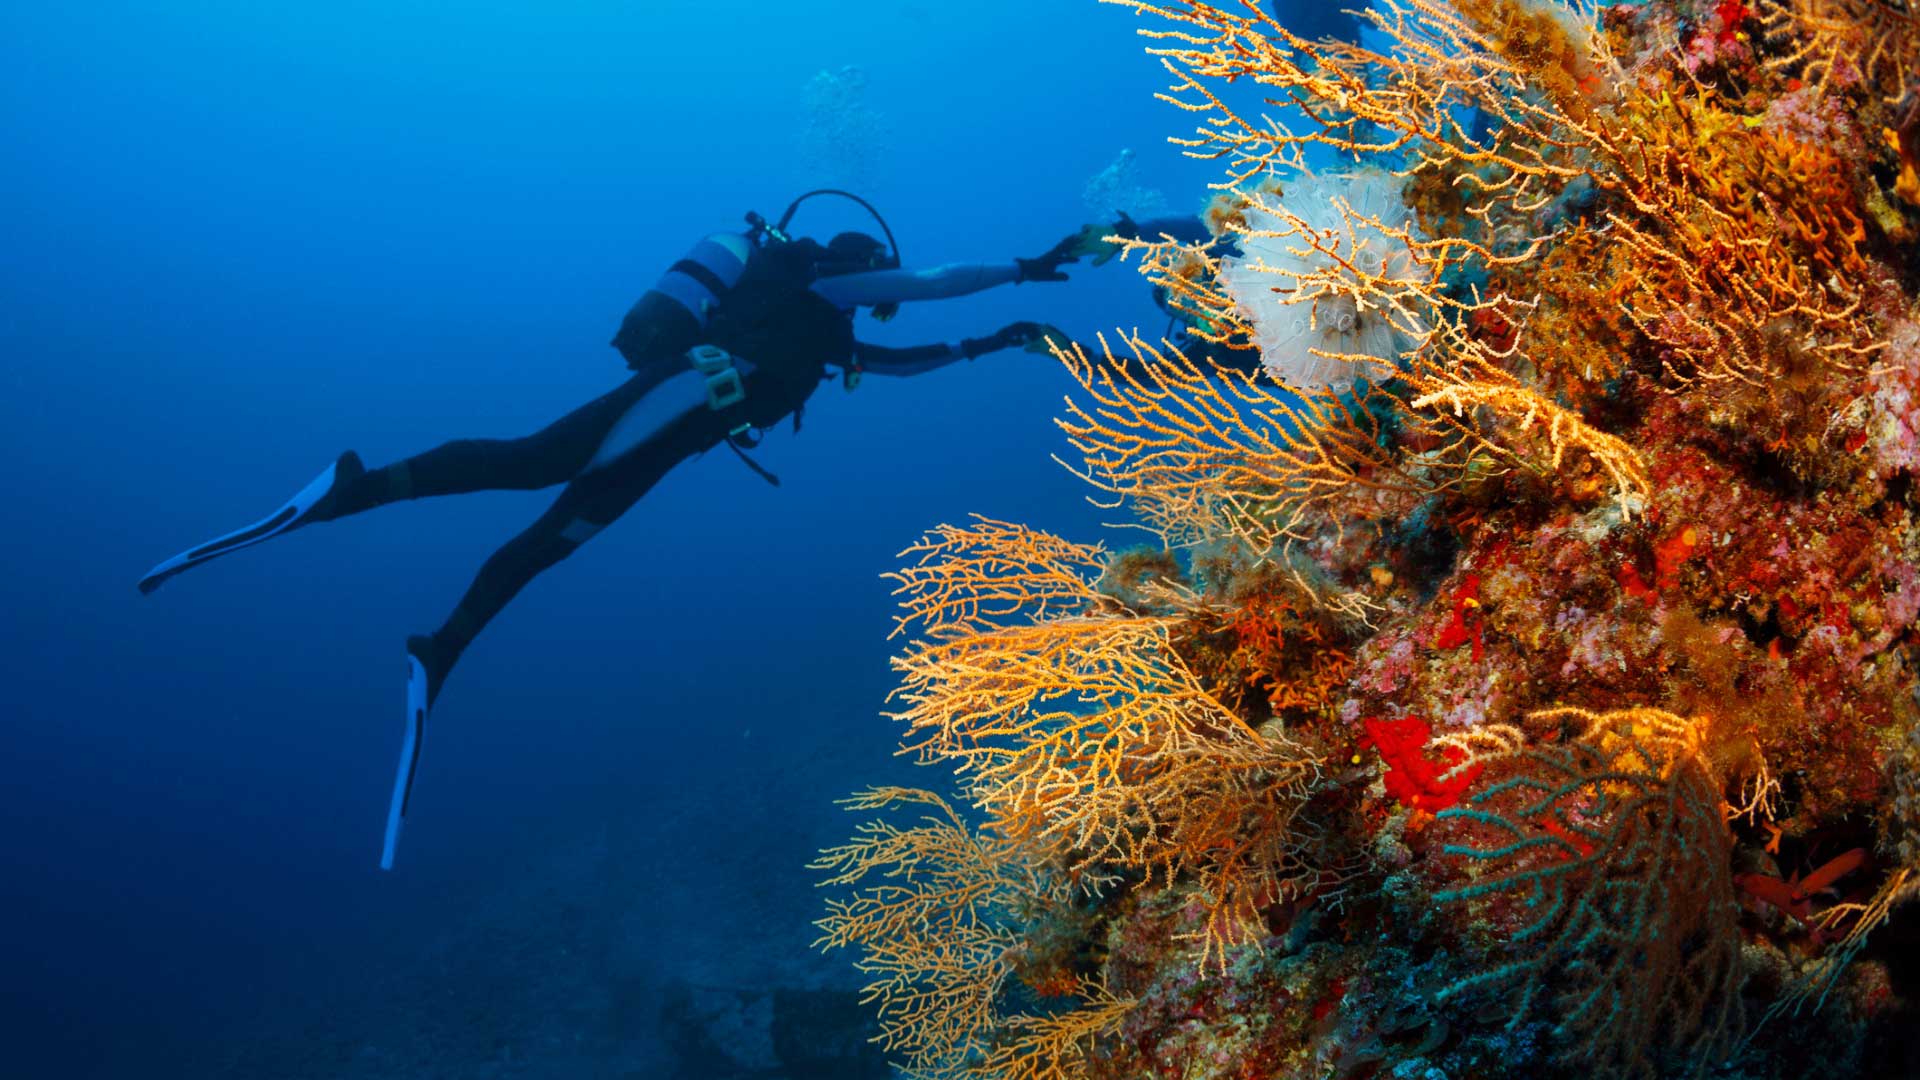 Plongée sous marine : les meilleurs spots où plonger - Elle